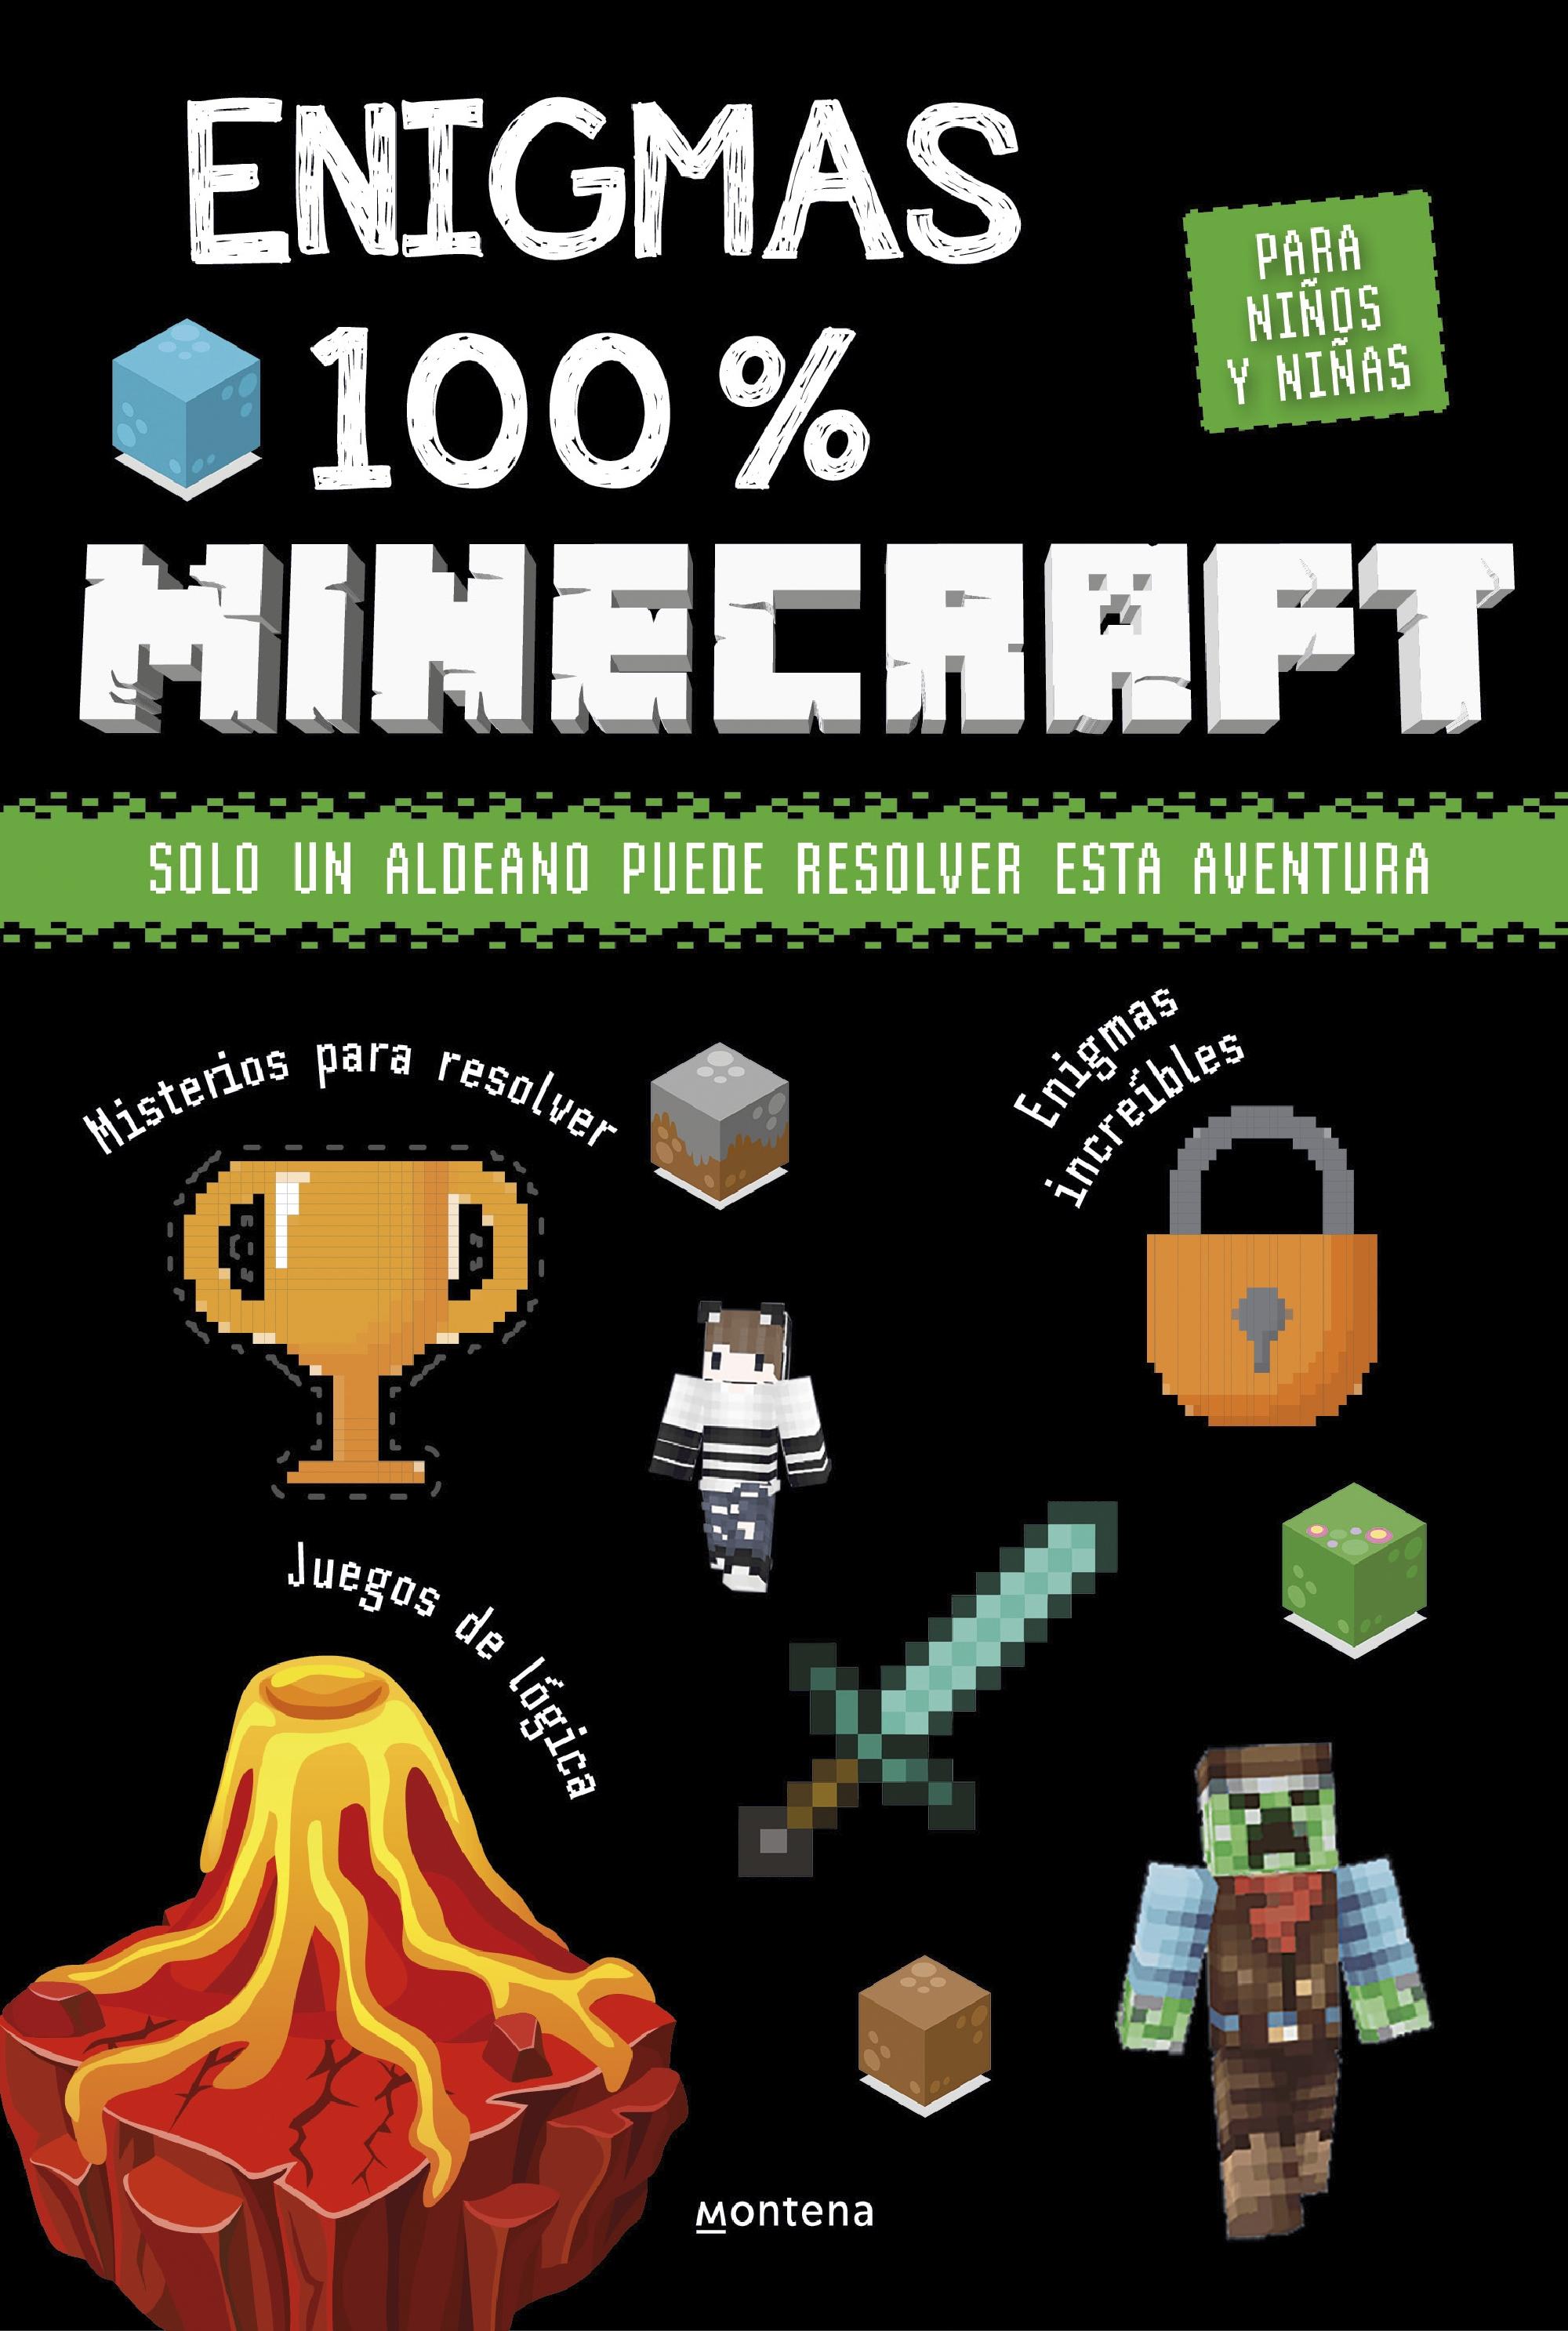 Enigmas 100% Minecraft  "Solo un Aldeano Puede Resolver Esta Aventura". 